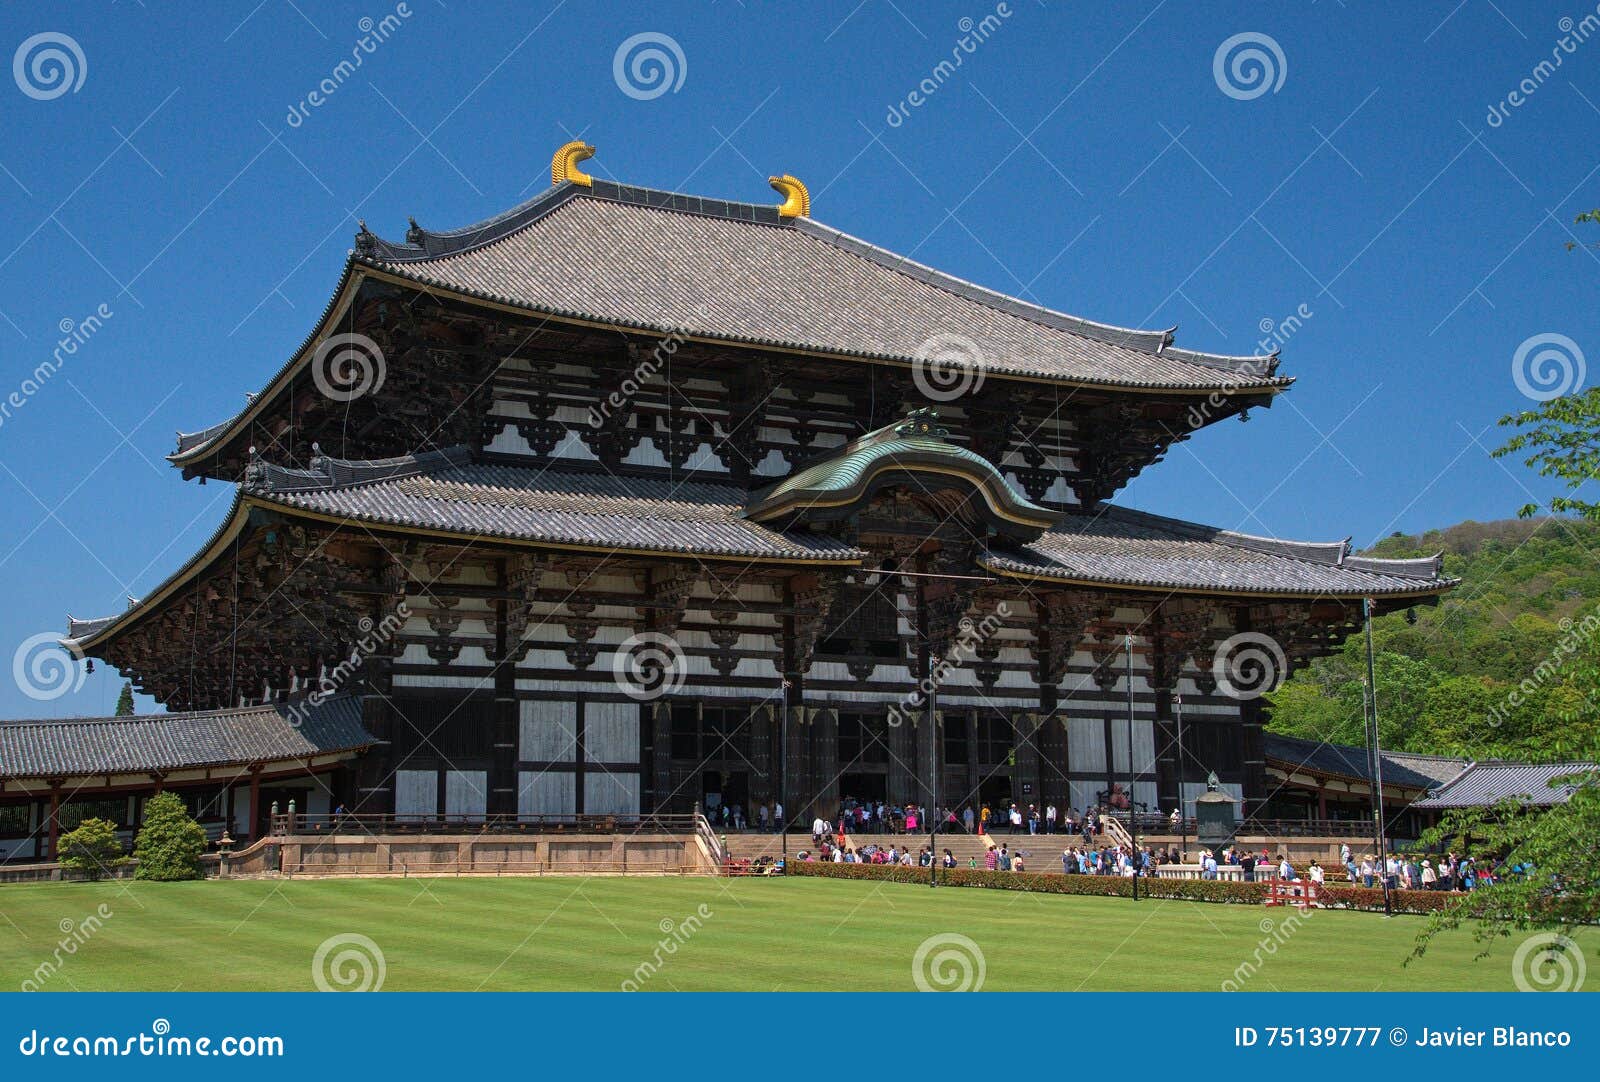 todai-ji temple, nara (japan)